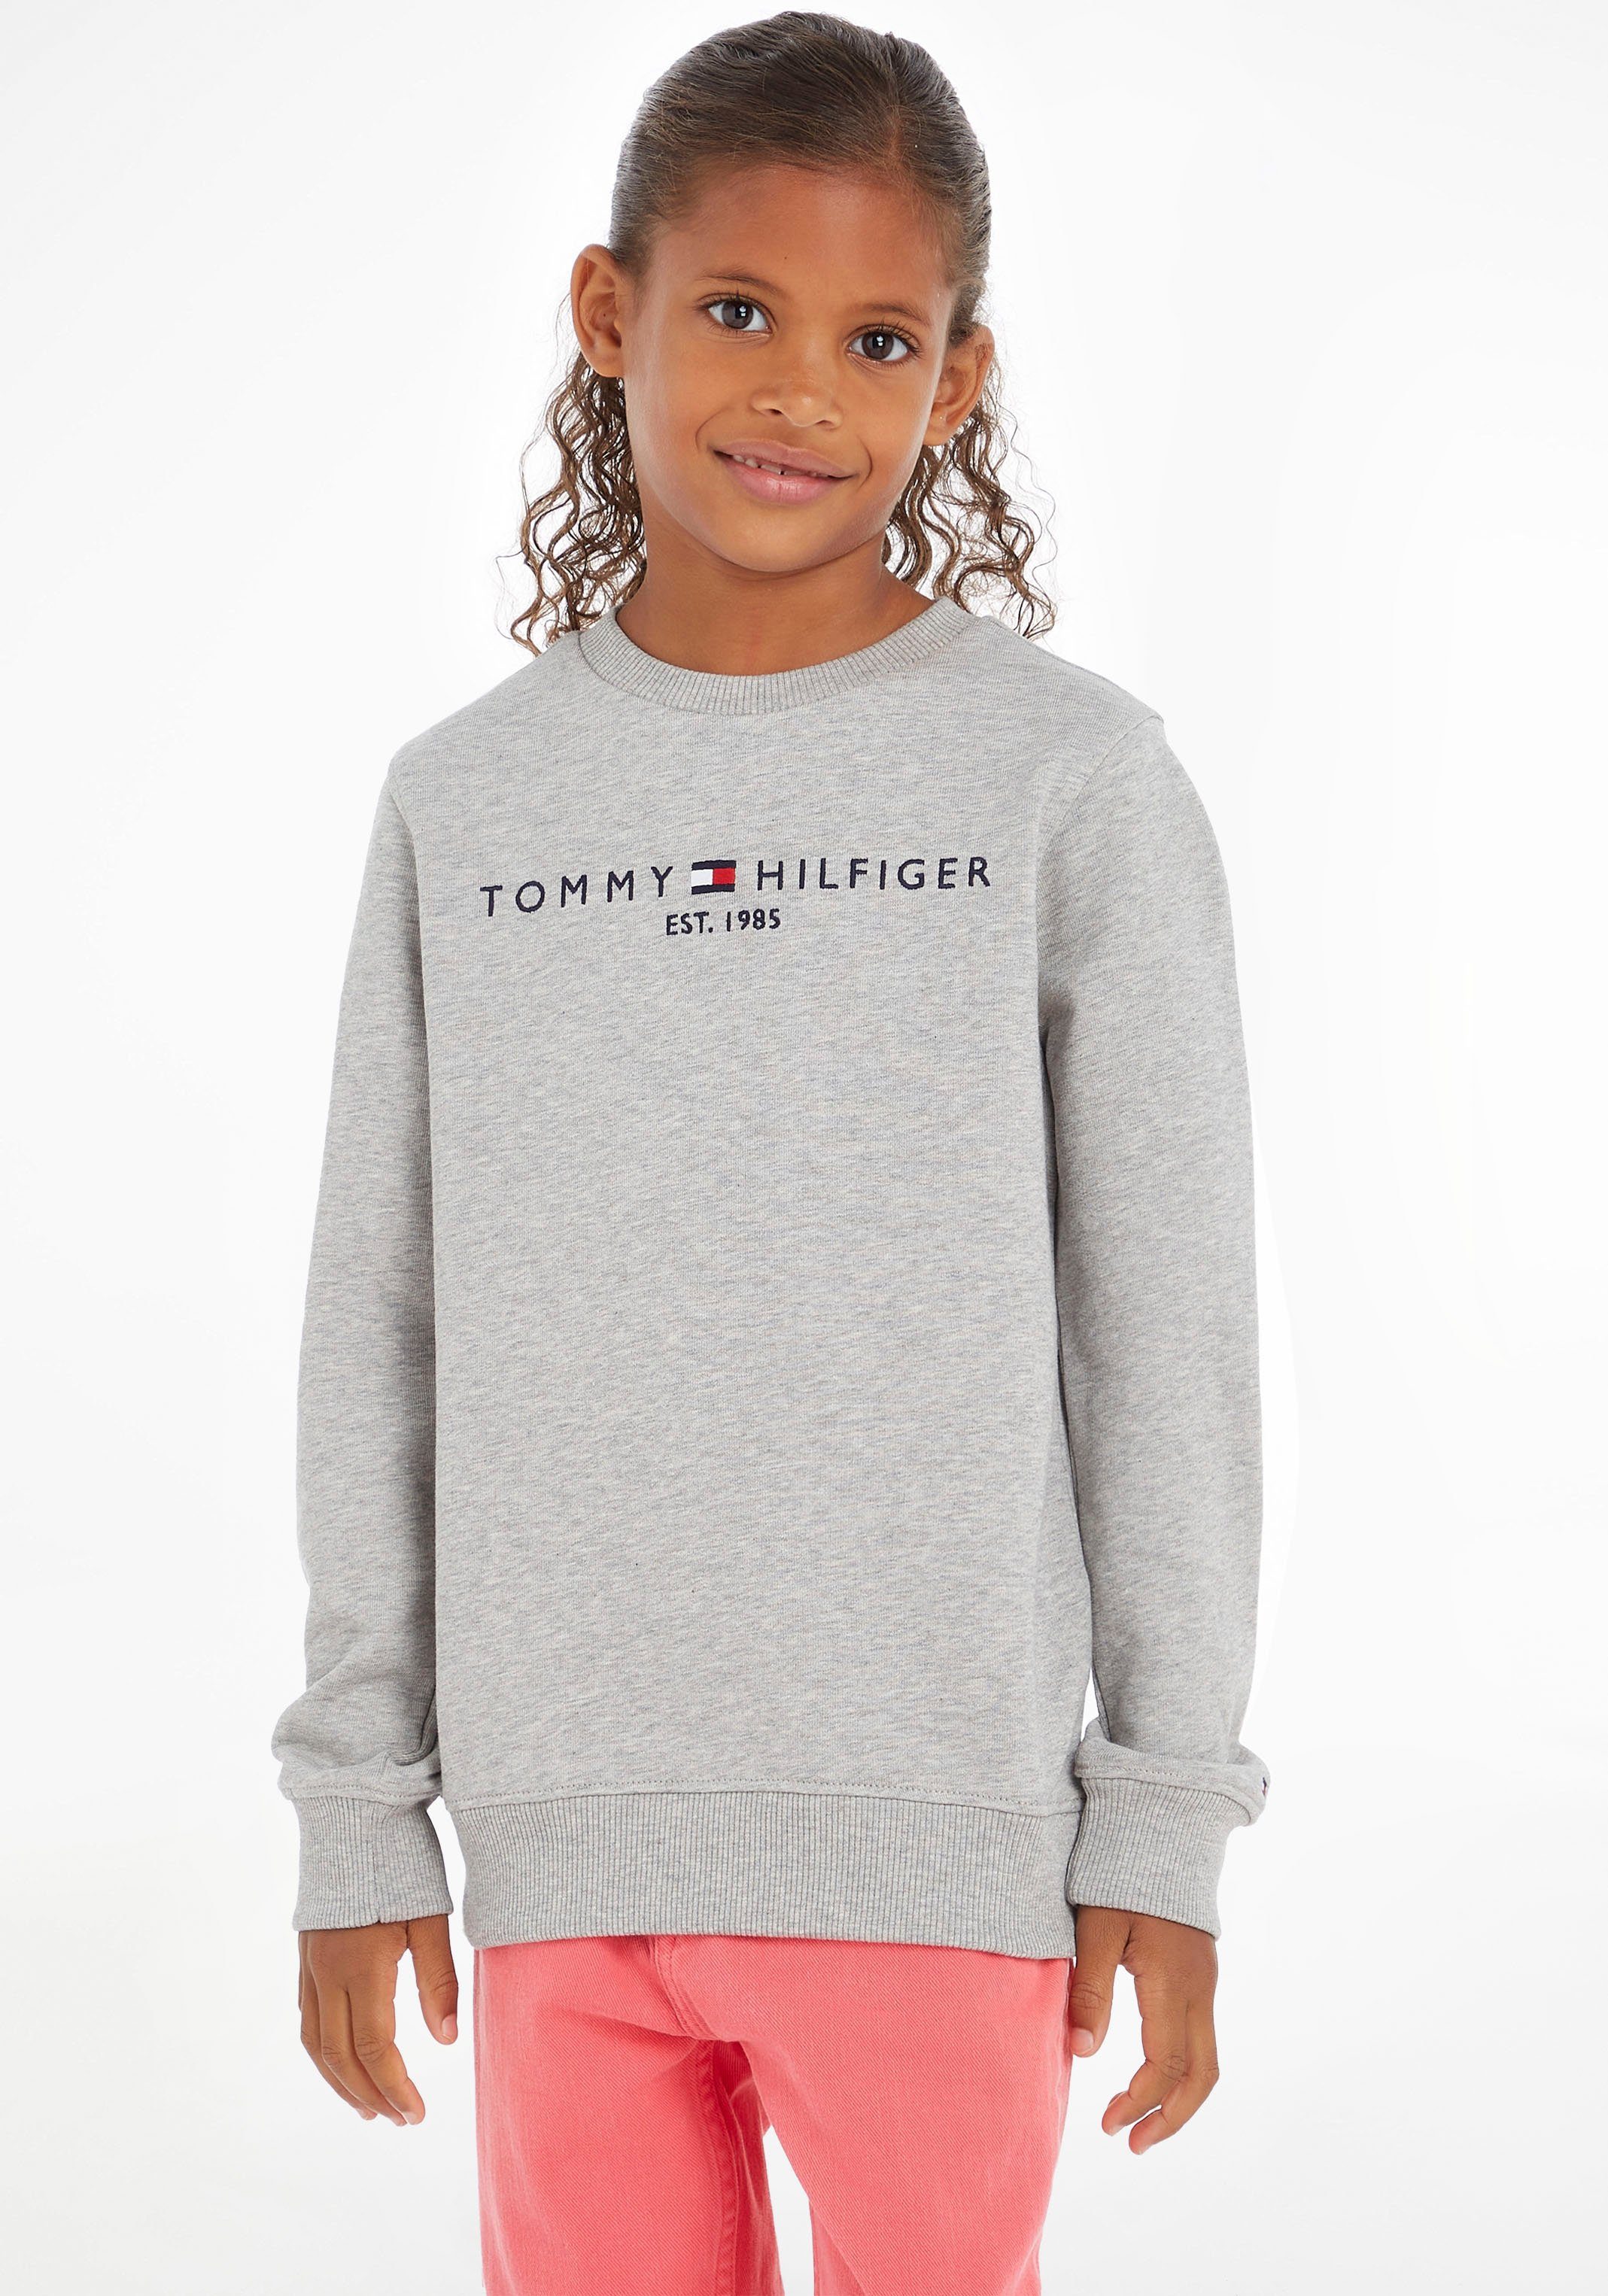 Tommy Hilfiger Sweatshirt ESSENTIAL SWEATSHIRT Junior Mädchen und MiniMe,für Kids Jungen Kinder